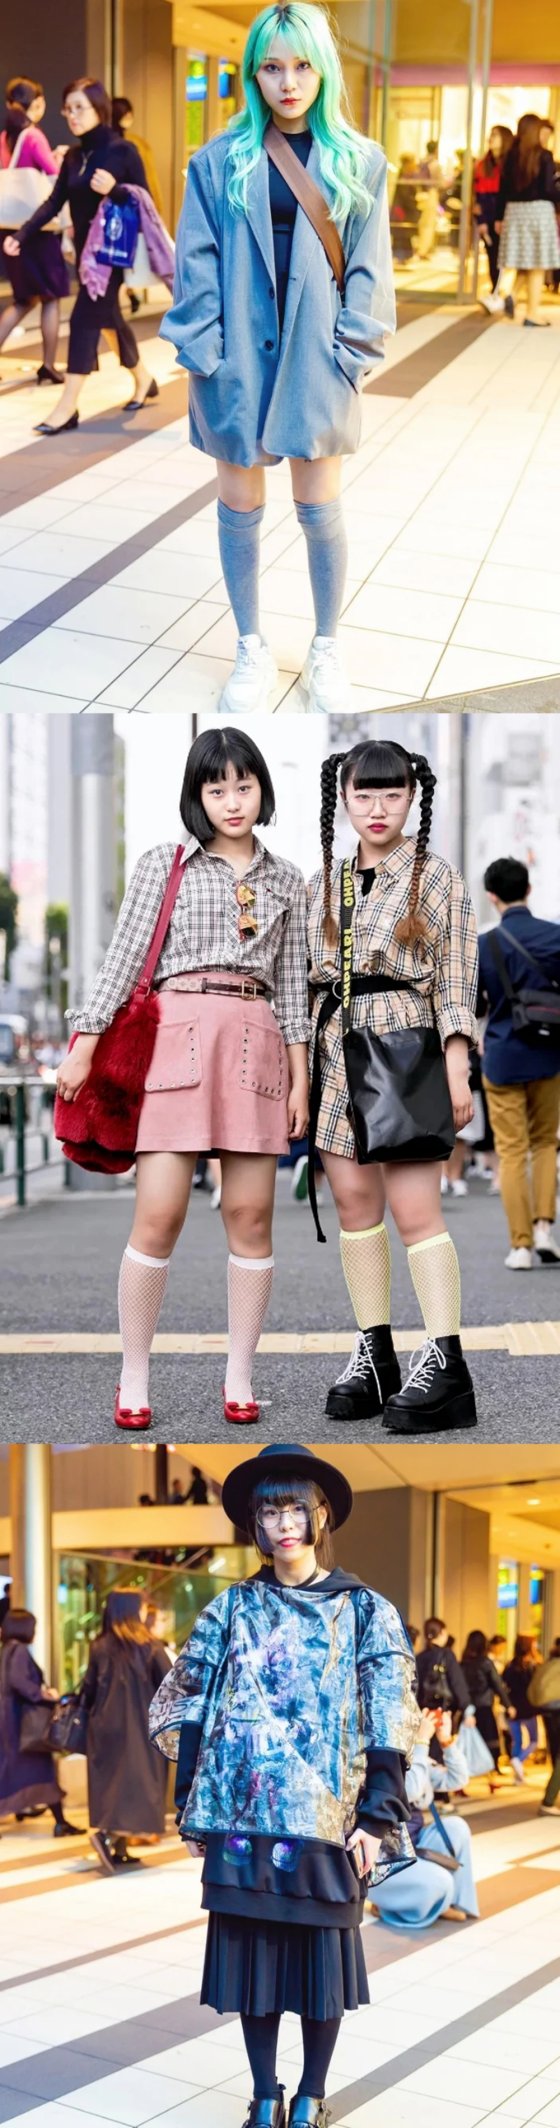 ადამიანების დაცინვა არ მჩვევია,   მაგრამ ამ იაპონელი გოგოების ფეხების დანახვაზე სულ მეცინება